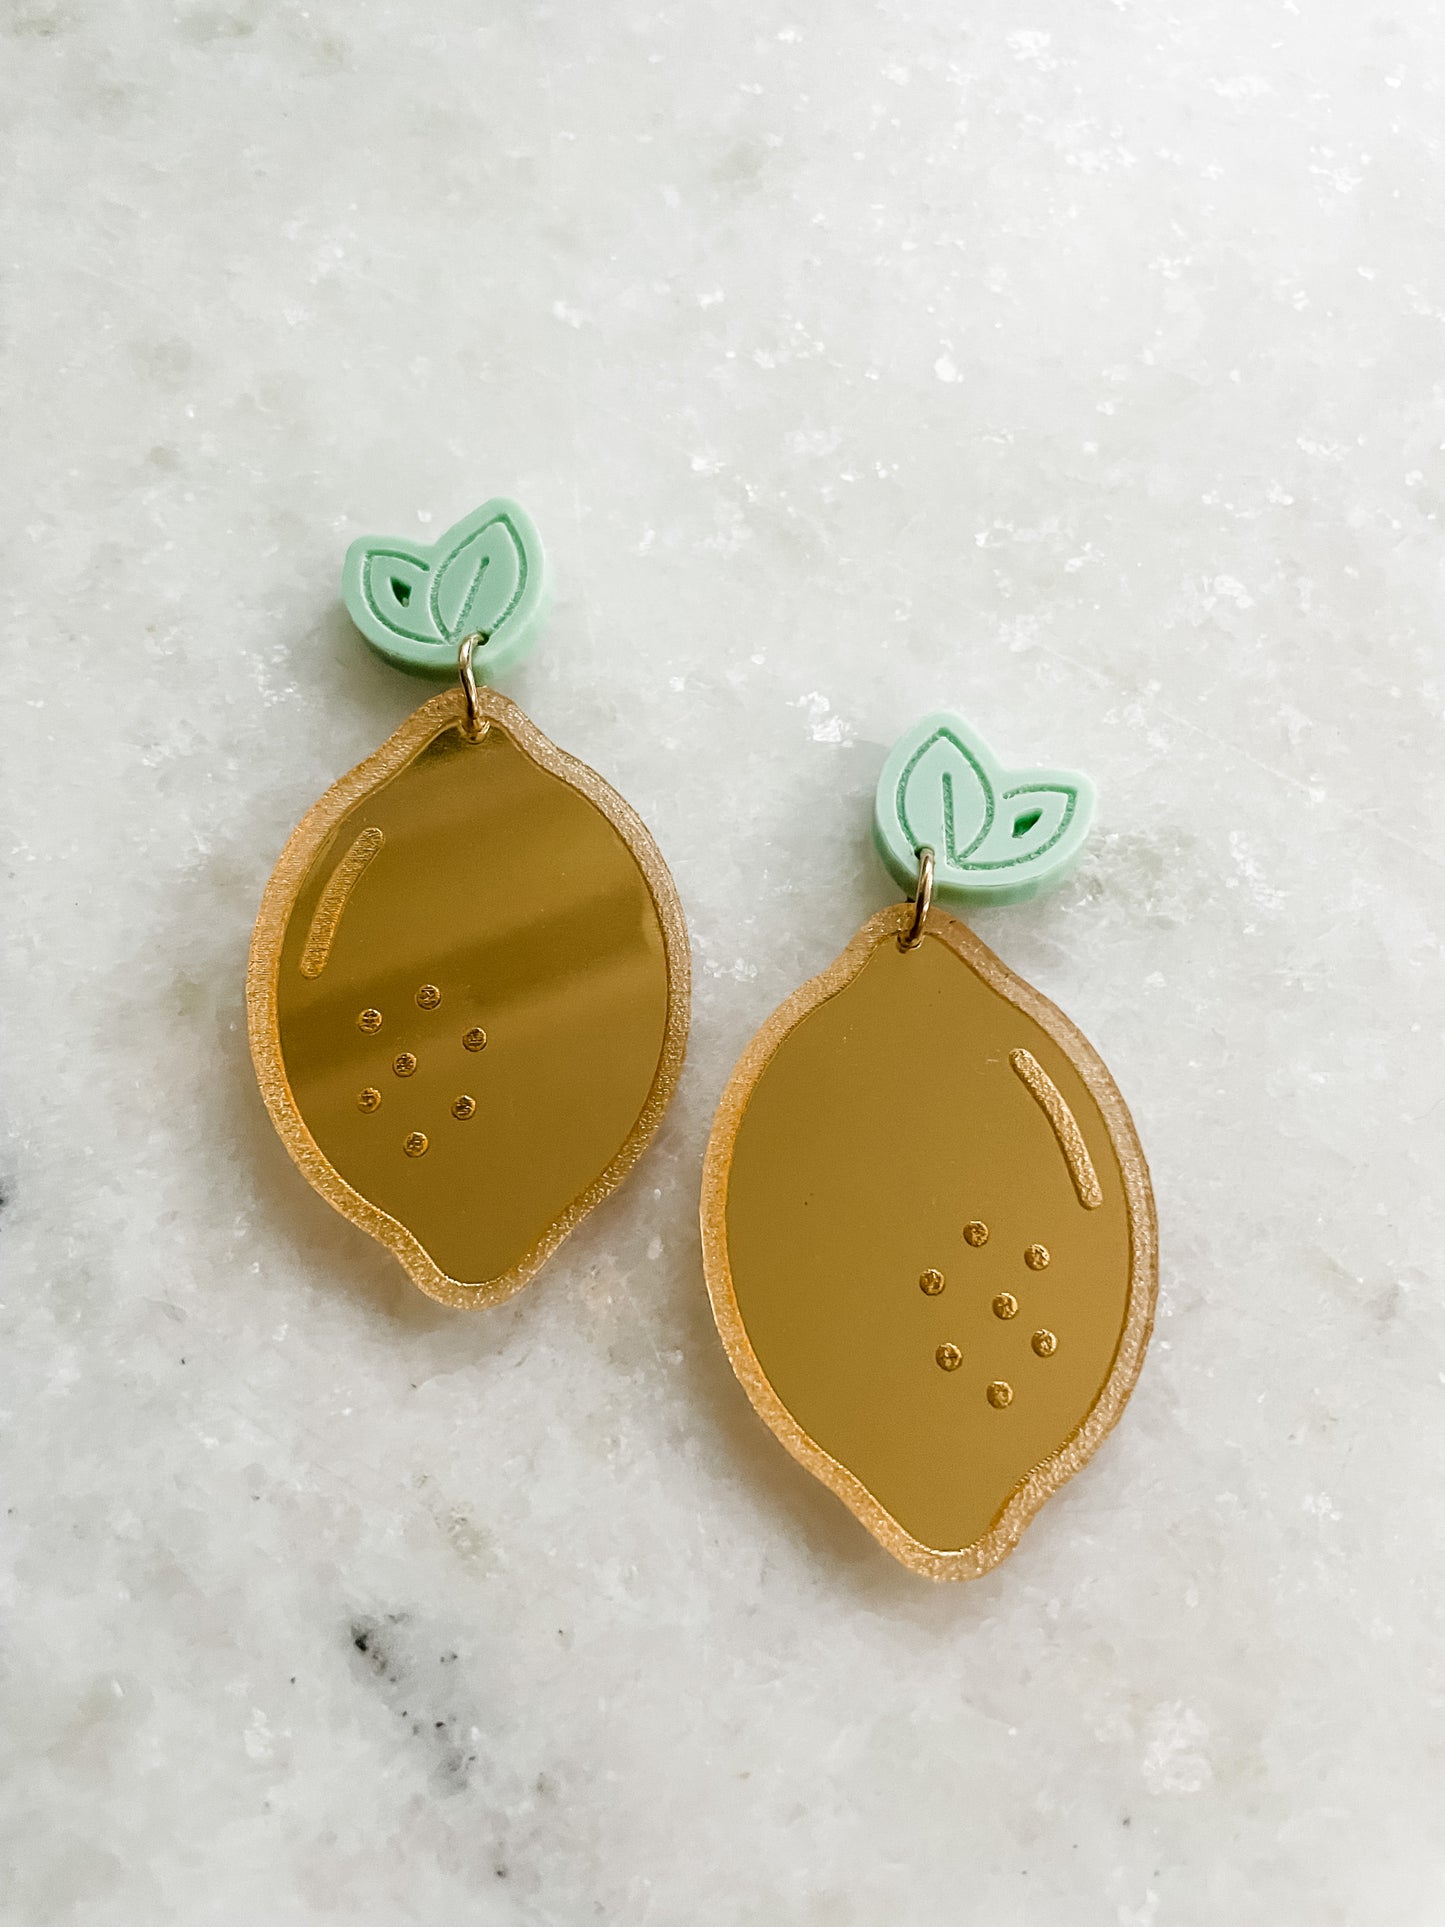 SALE Lemon earrings